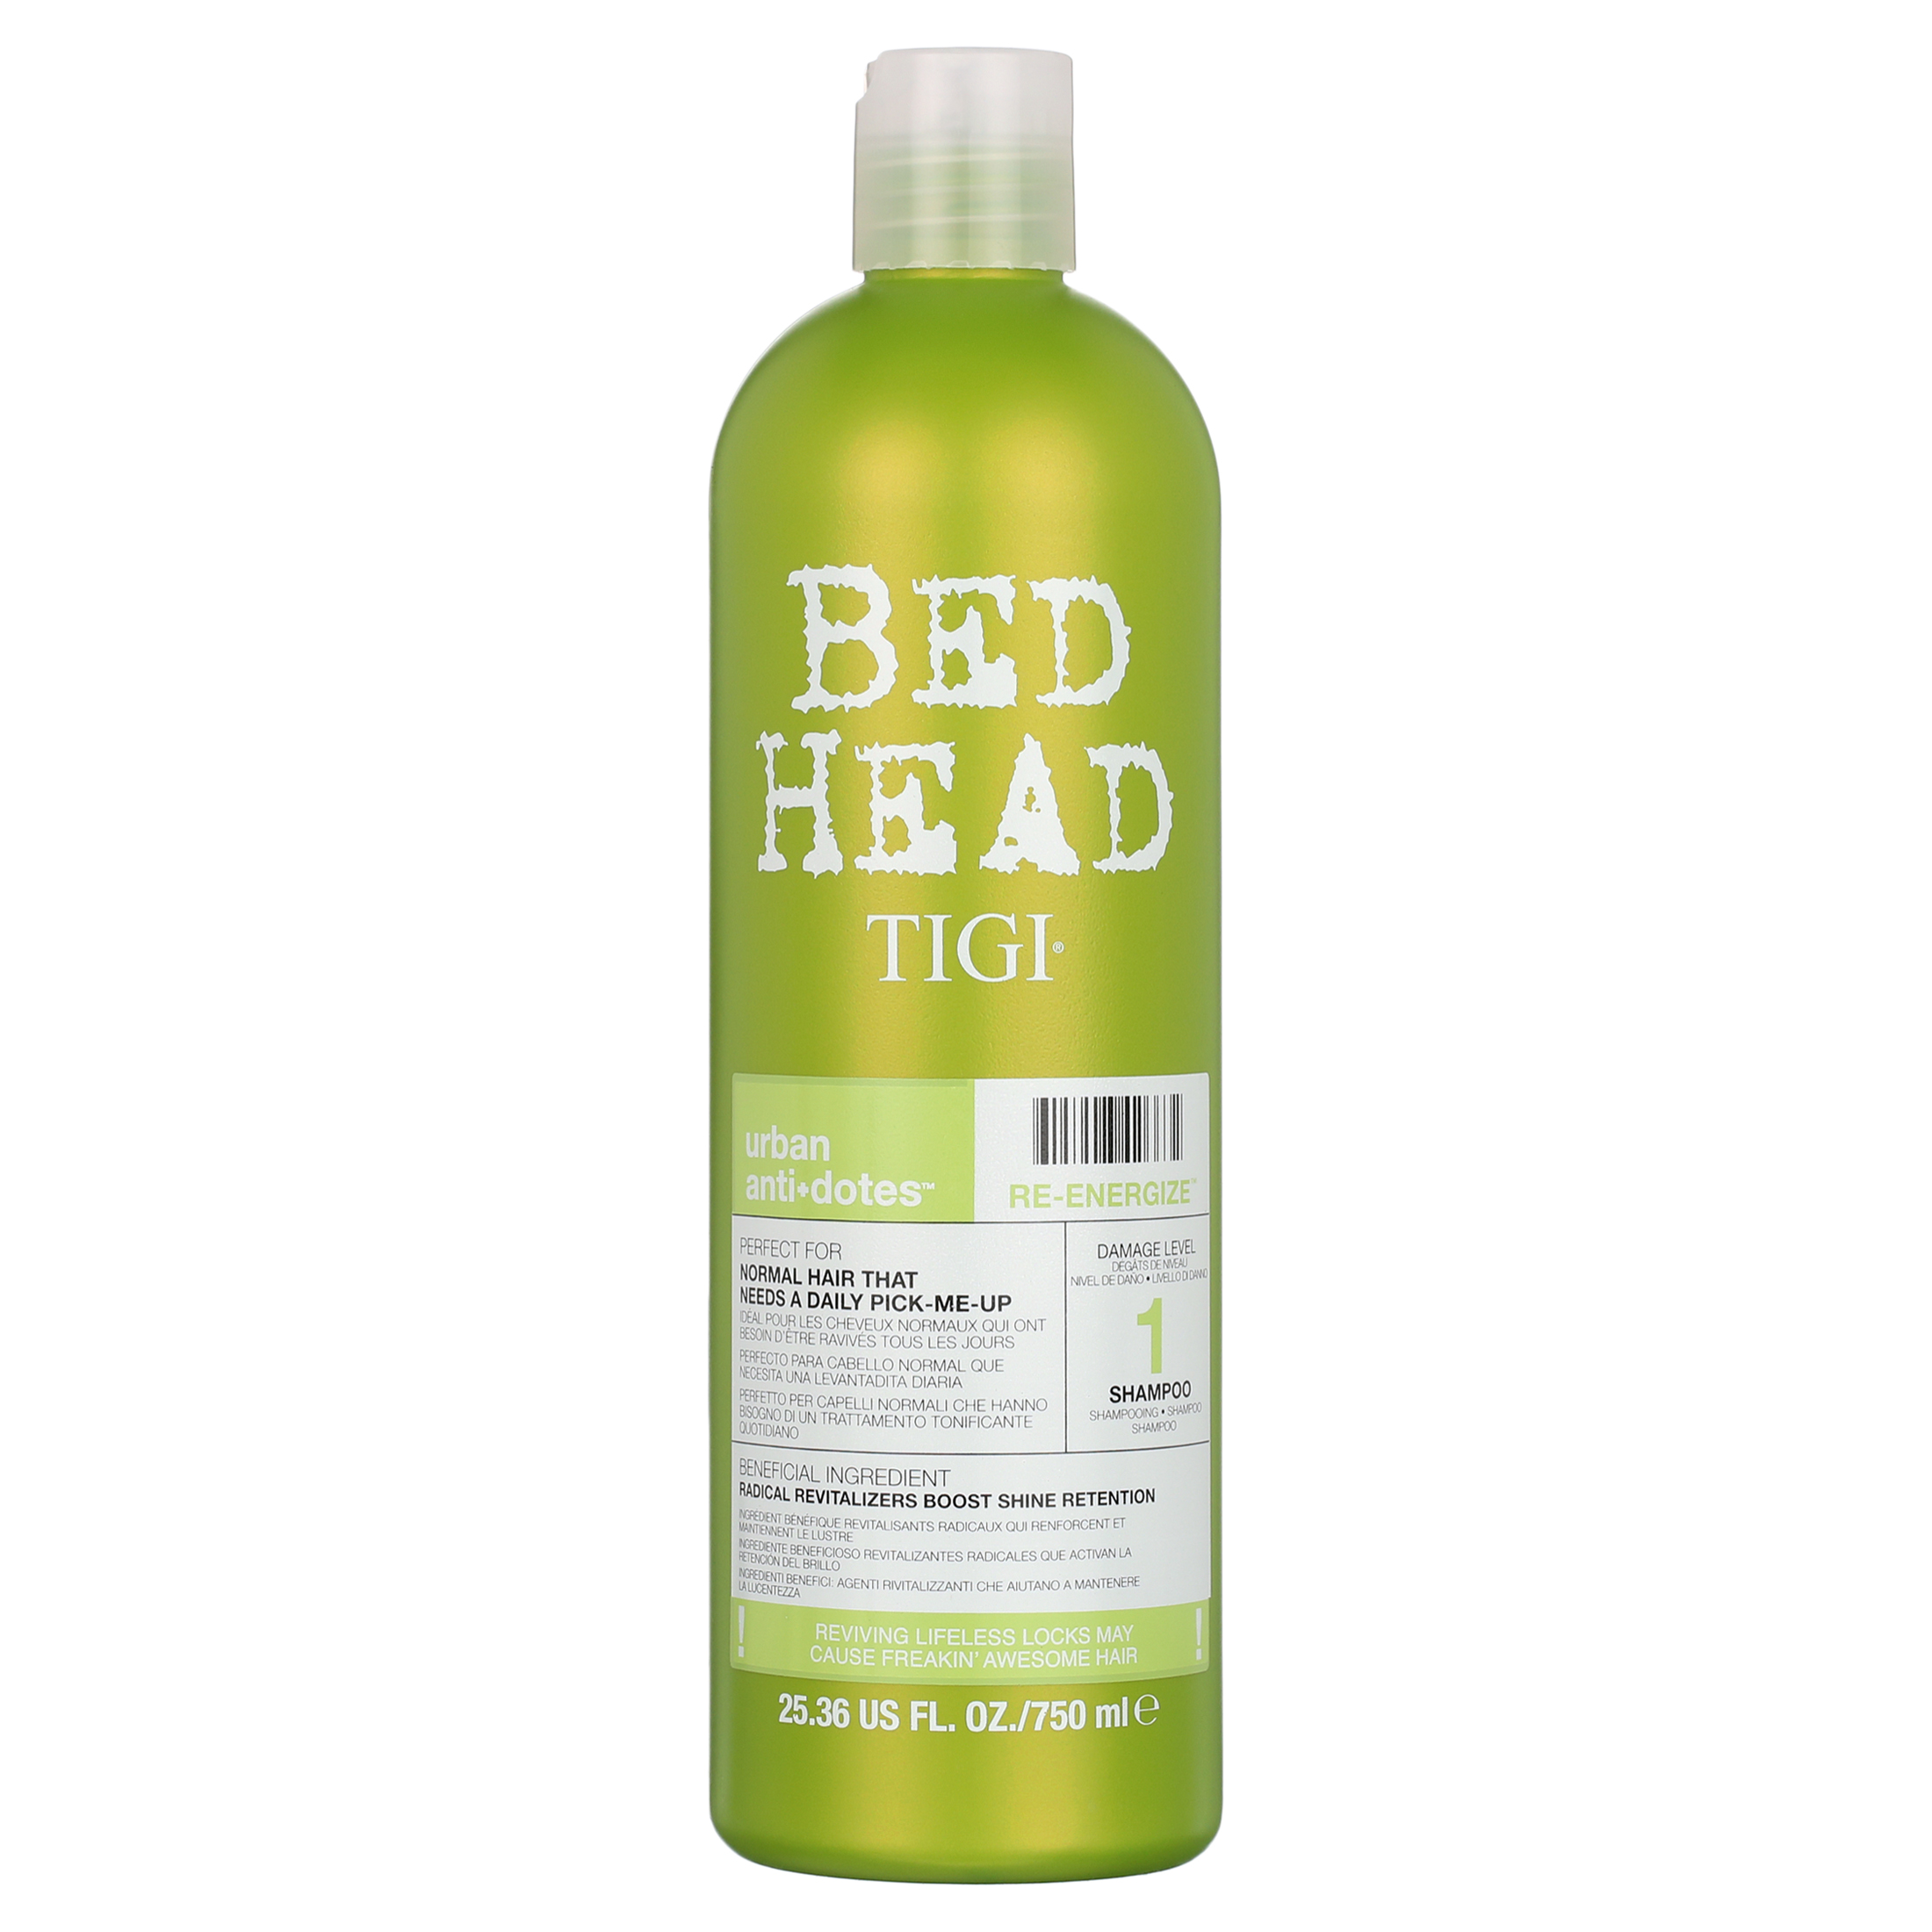 TIGI Bed Head Shampoo & Conditioner Re-Energize Set 25.36 OZ ea - image 2 of 8